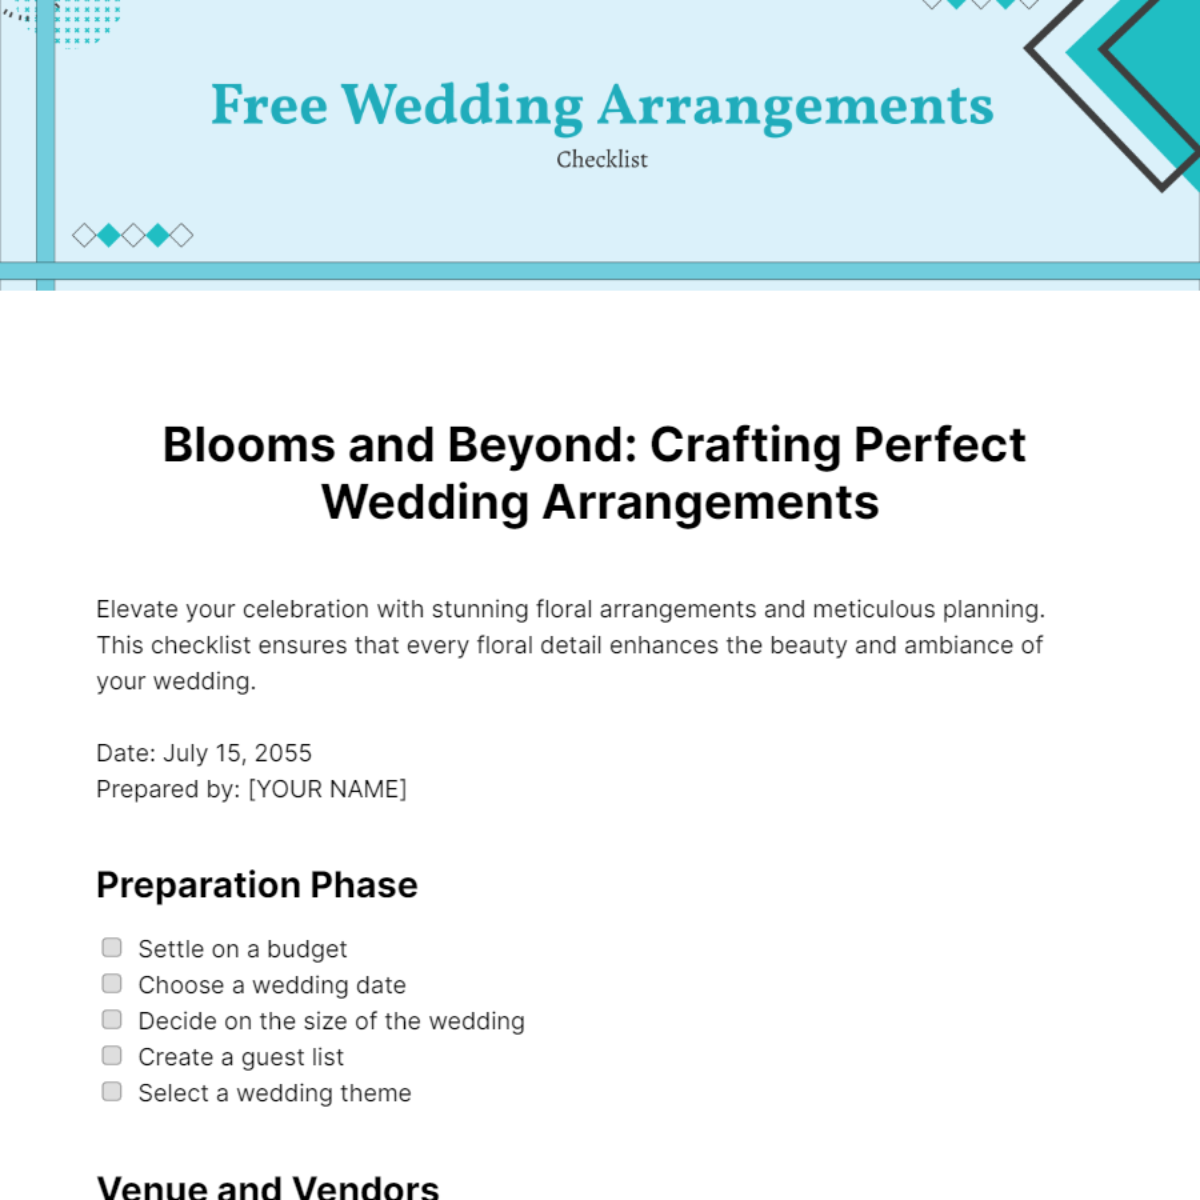 Wedding Arrangements Checklist Template